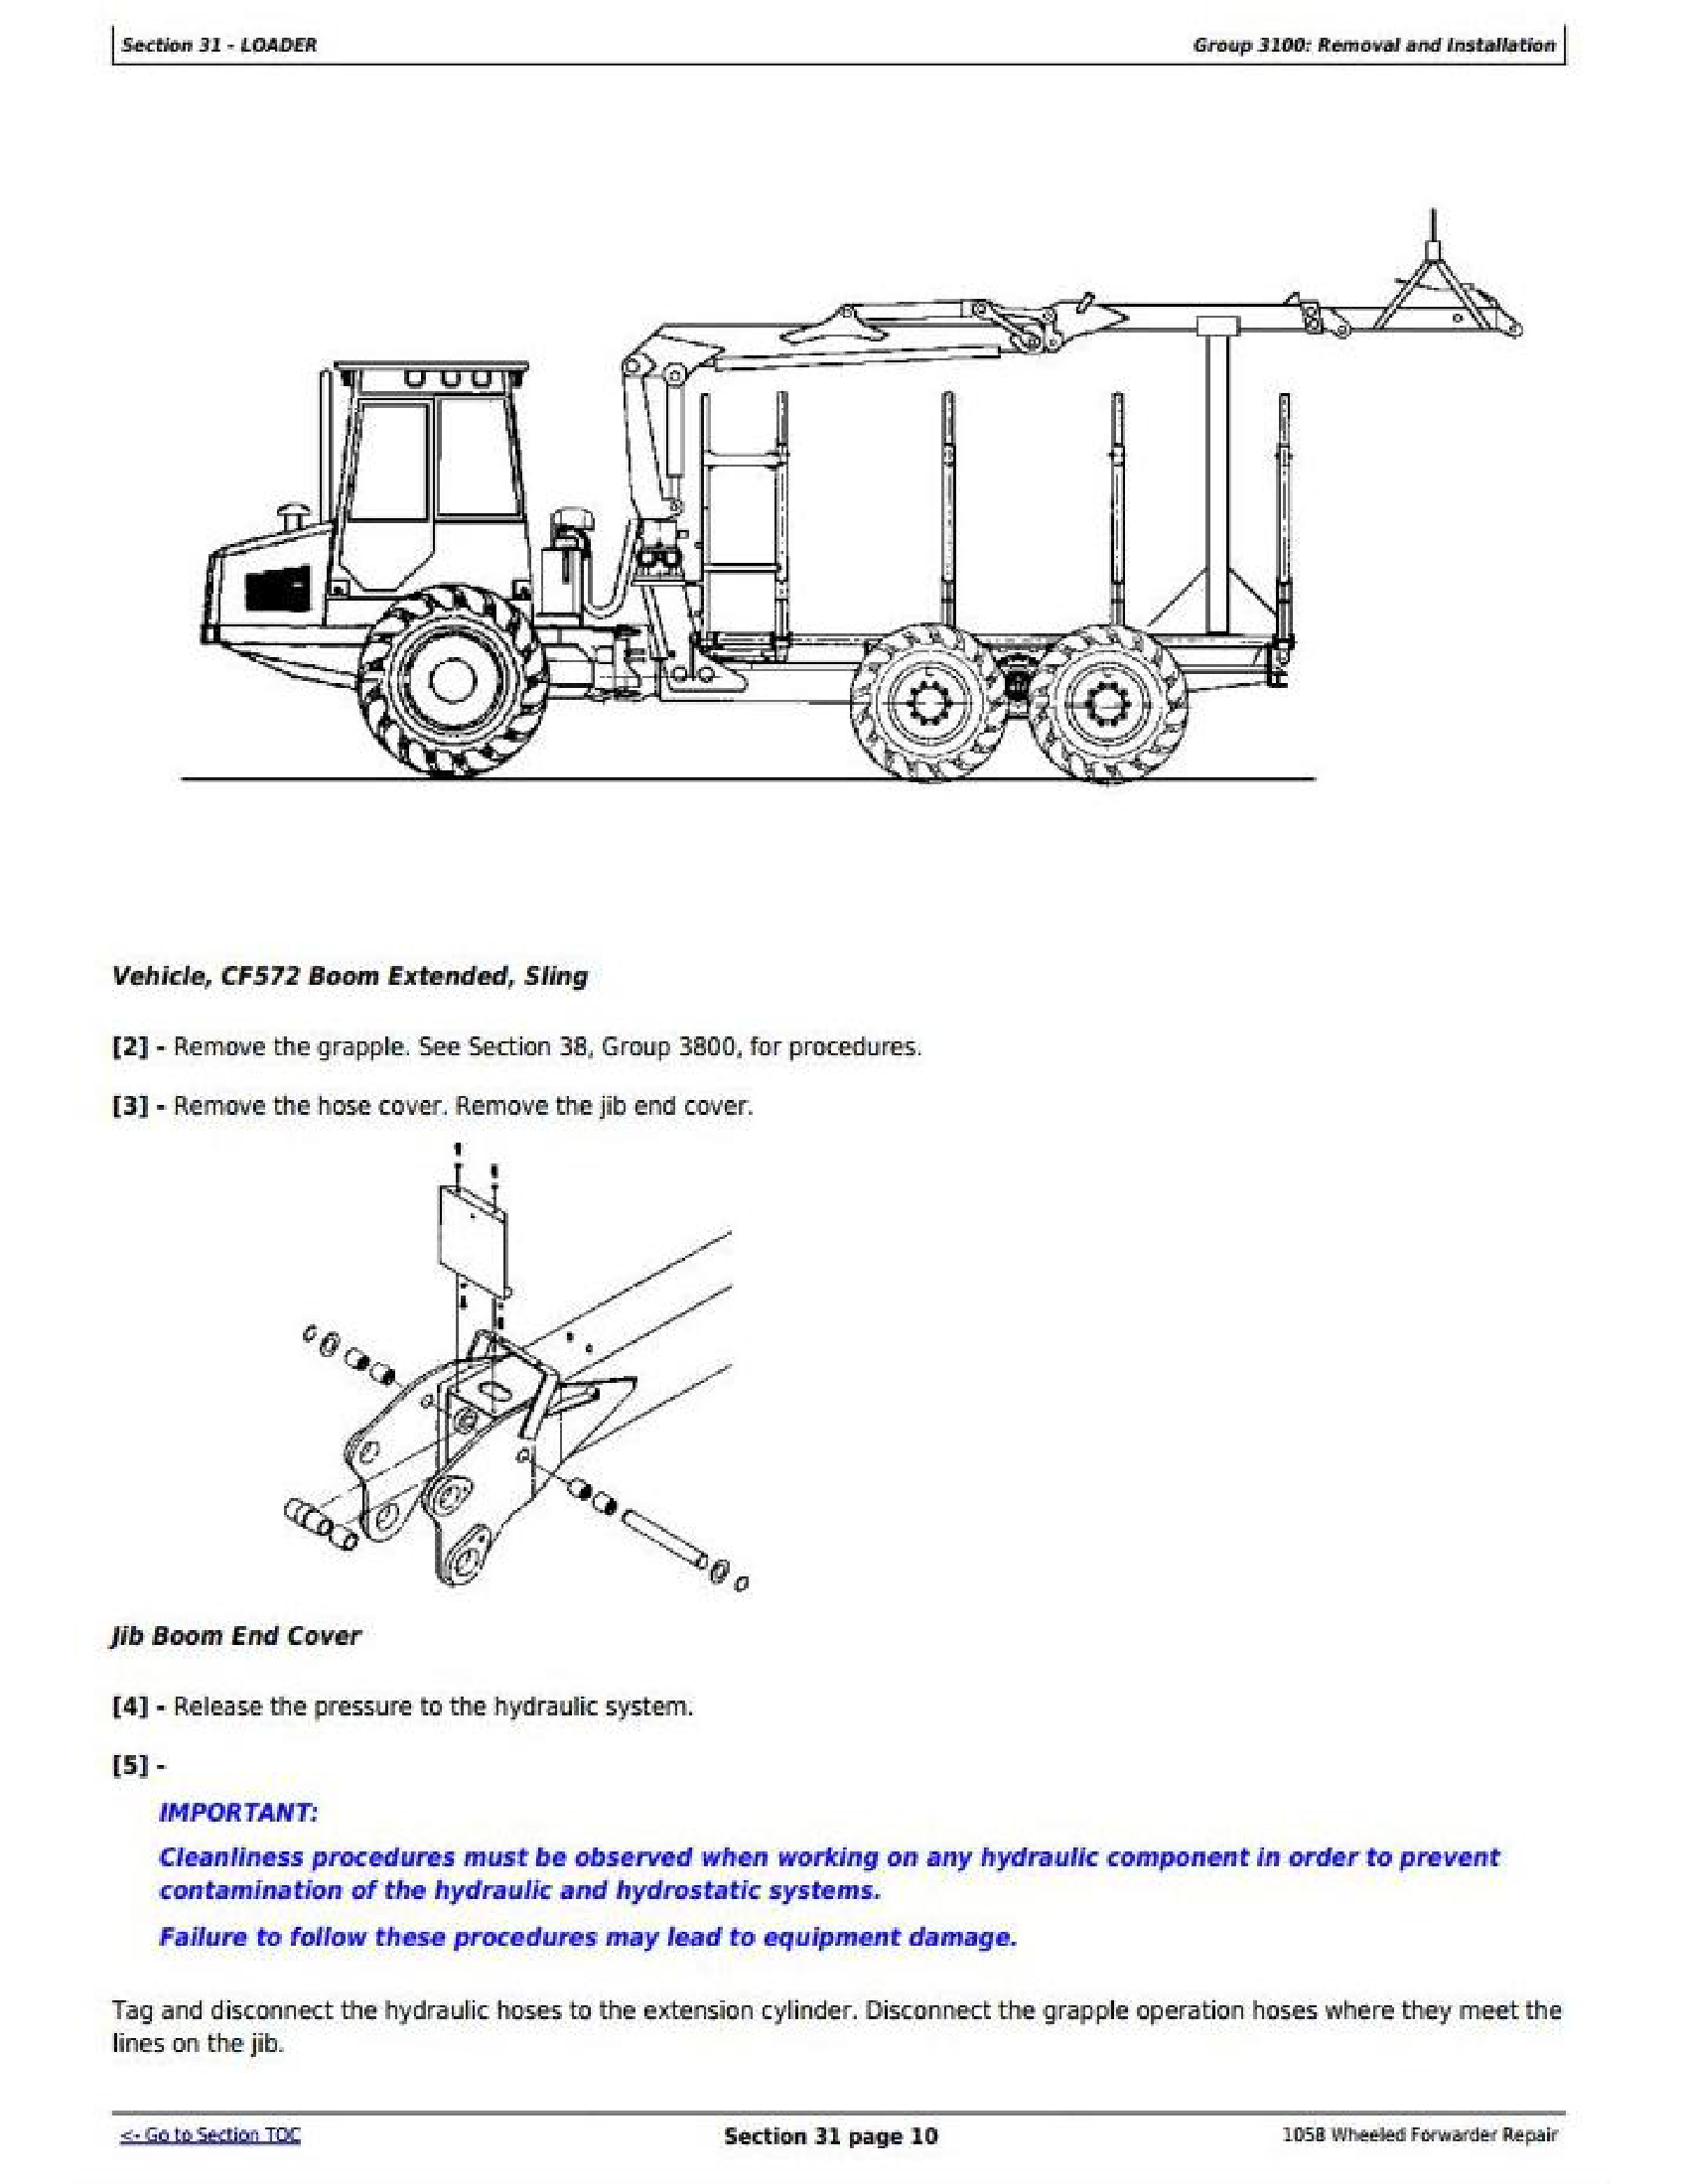 John Deere 1058 manual pdf